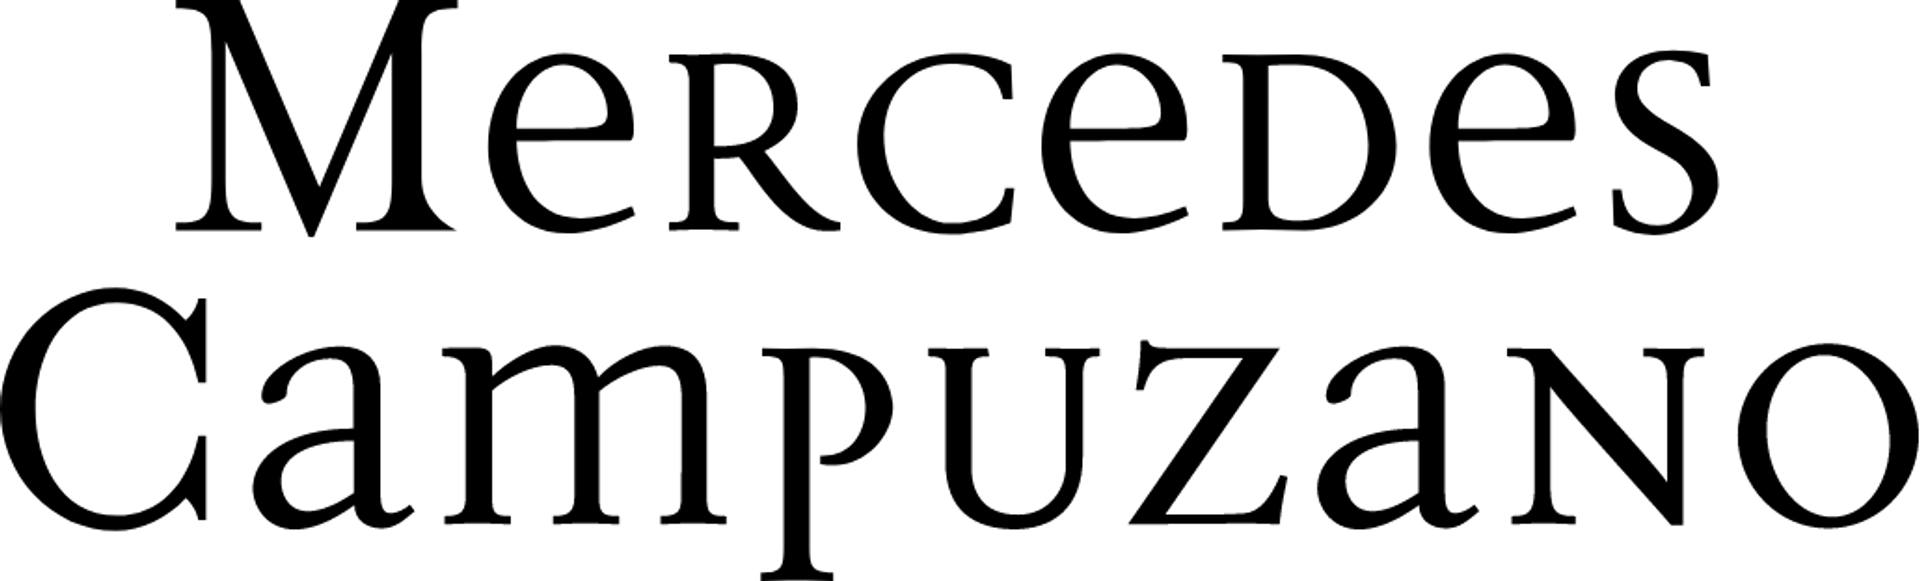 MERCEDES CAMPUZANO logo de catálogo